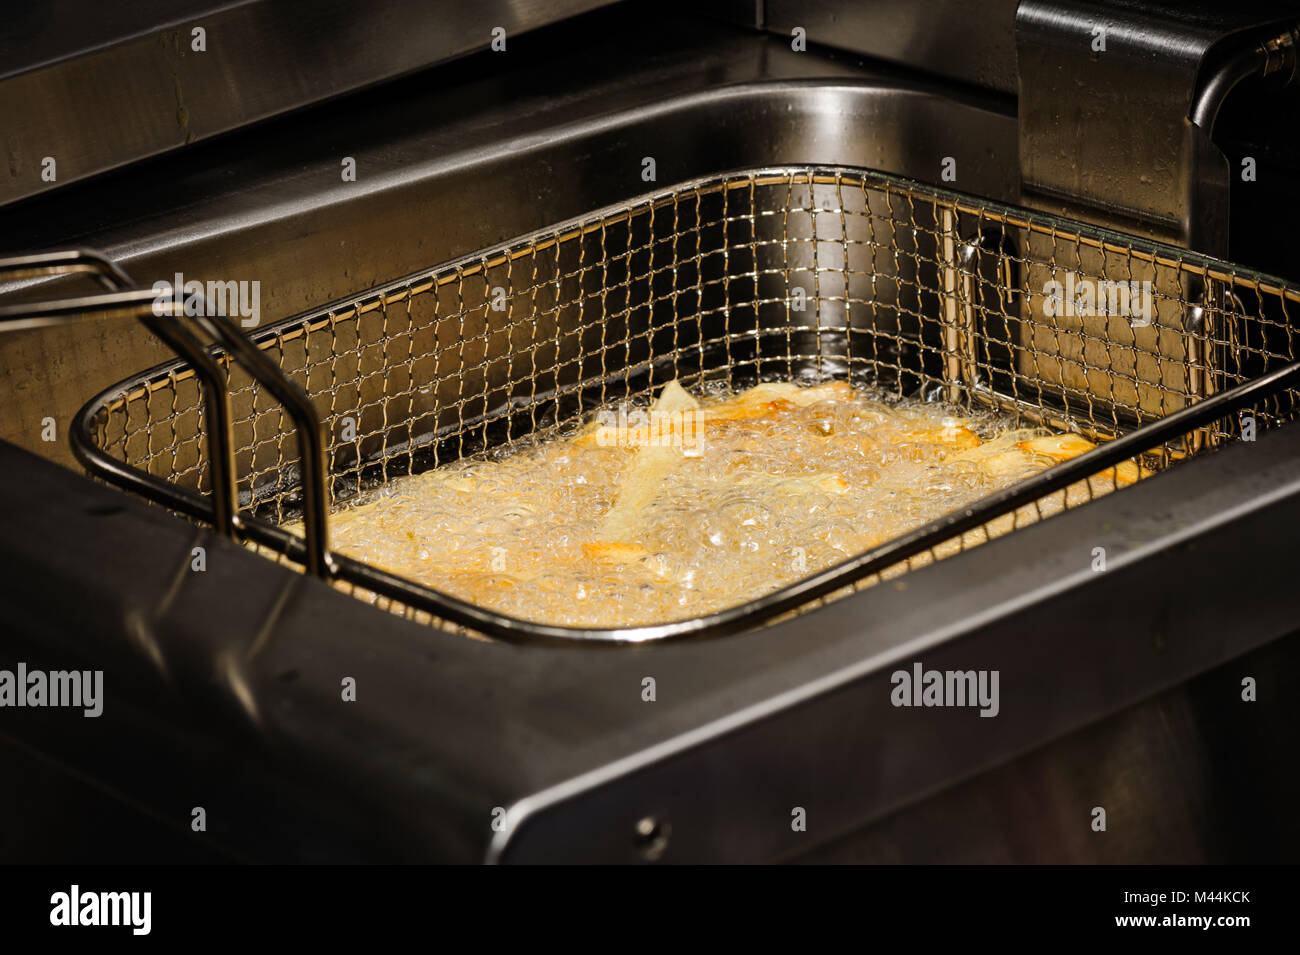 Zubereitung von Pommes frites Stockfoto